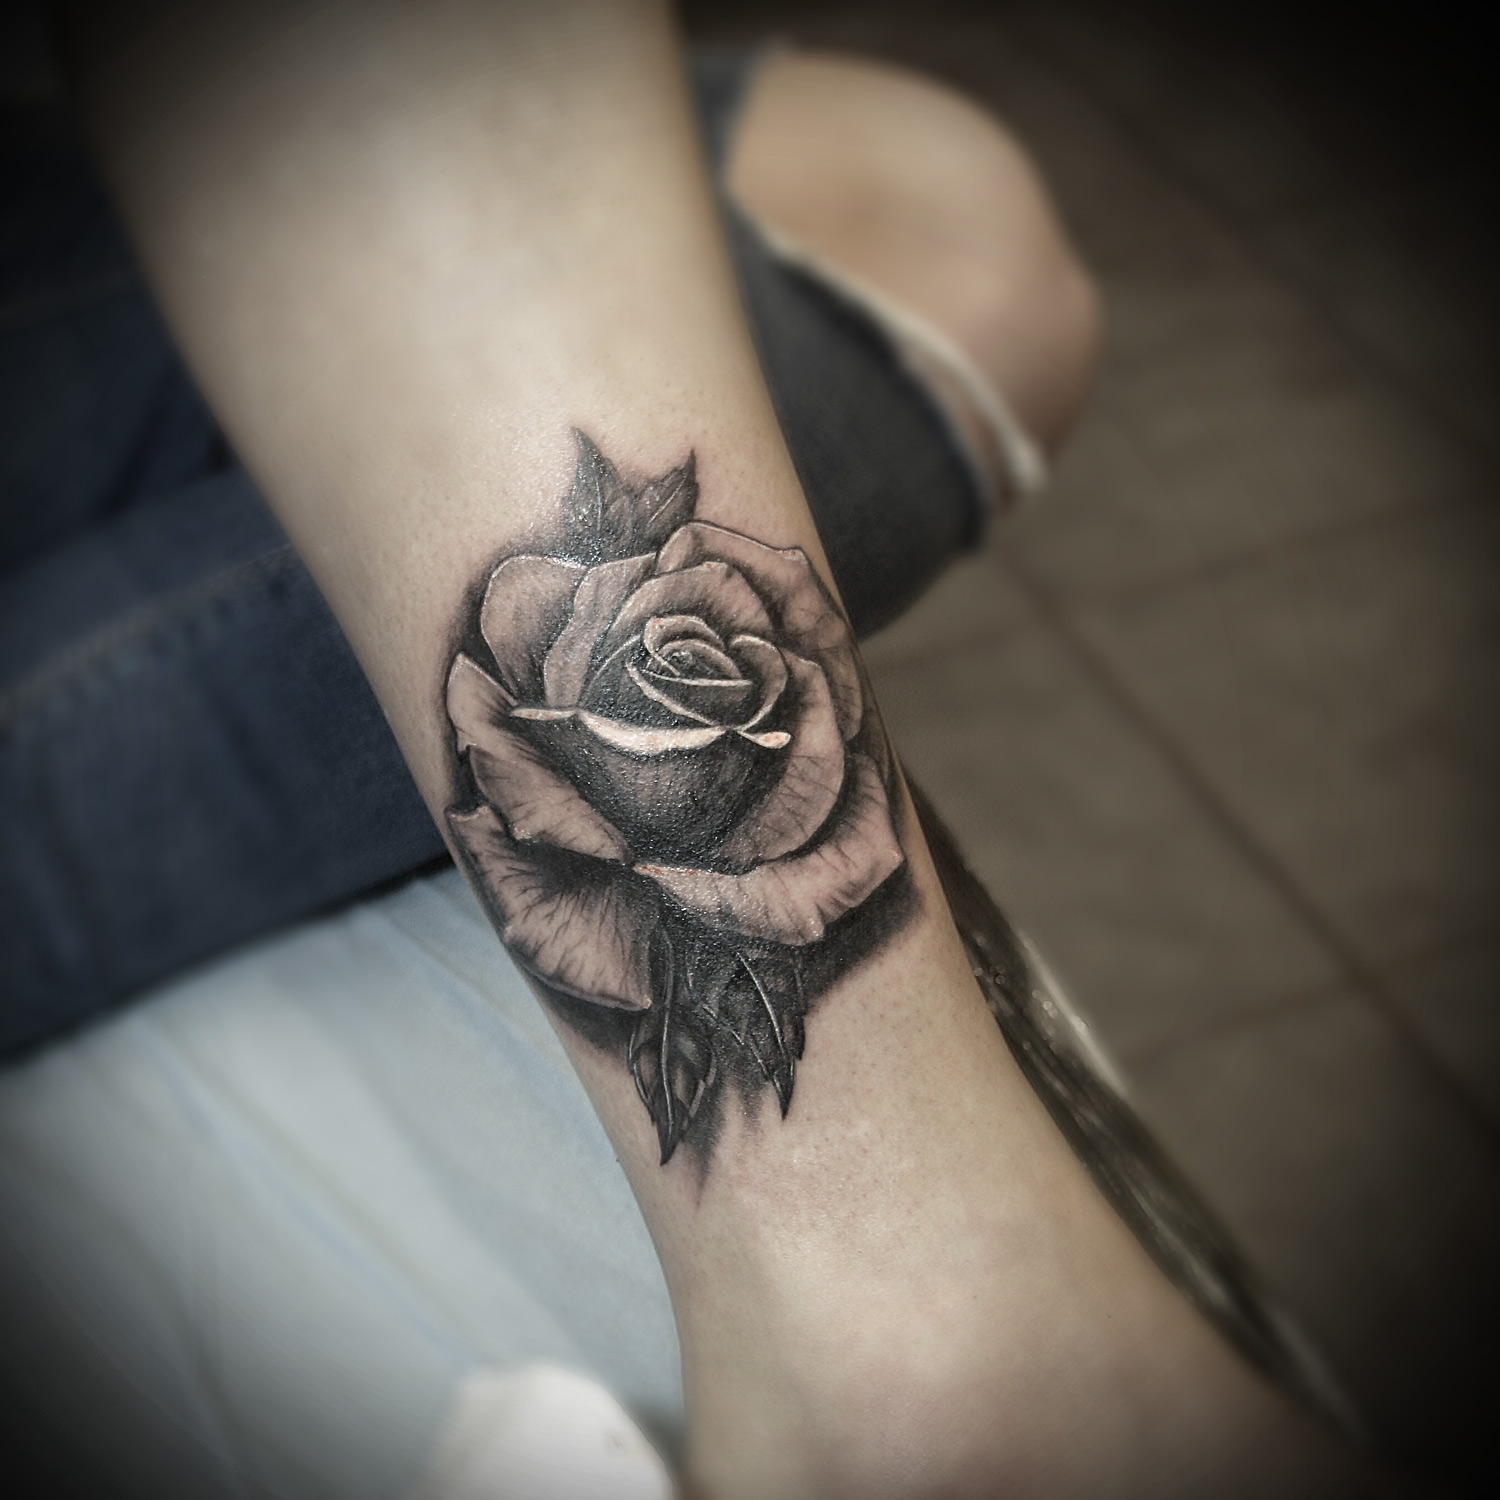 sorn-smb-tattoo-realism-rose.jpg